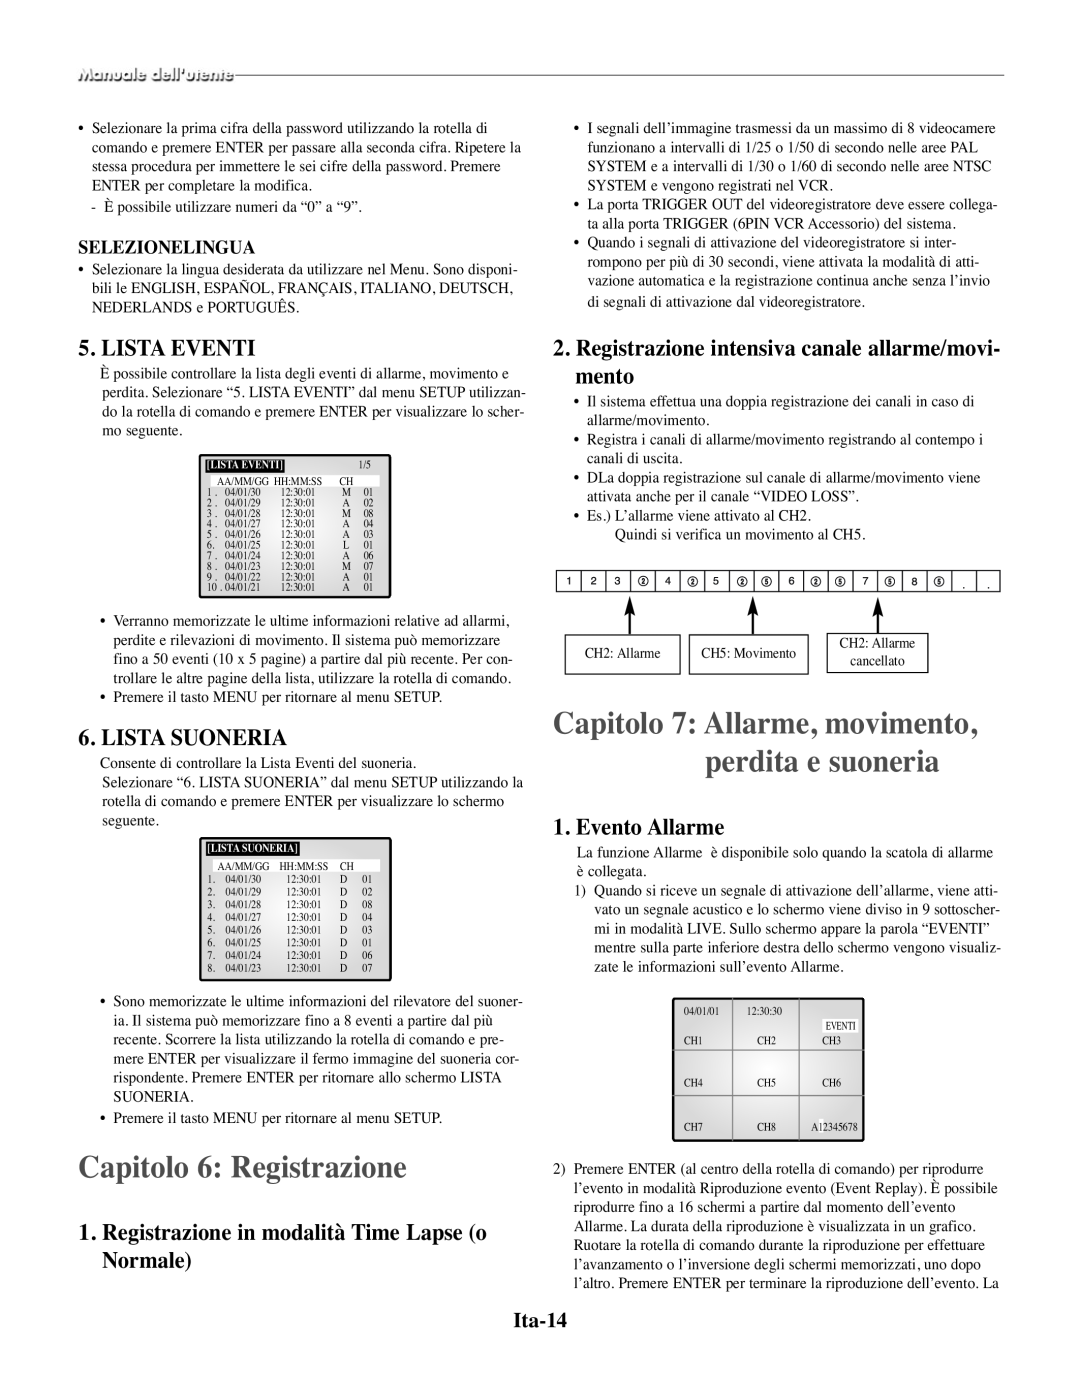 Samsung SMO-210TRP manual Capitolo 6 Registrazione, Capitolo 7 Allarme, movimento, perdita e suoneria, Lista Eventi, Ita-14 